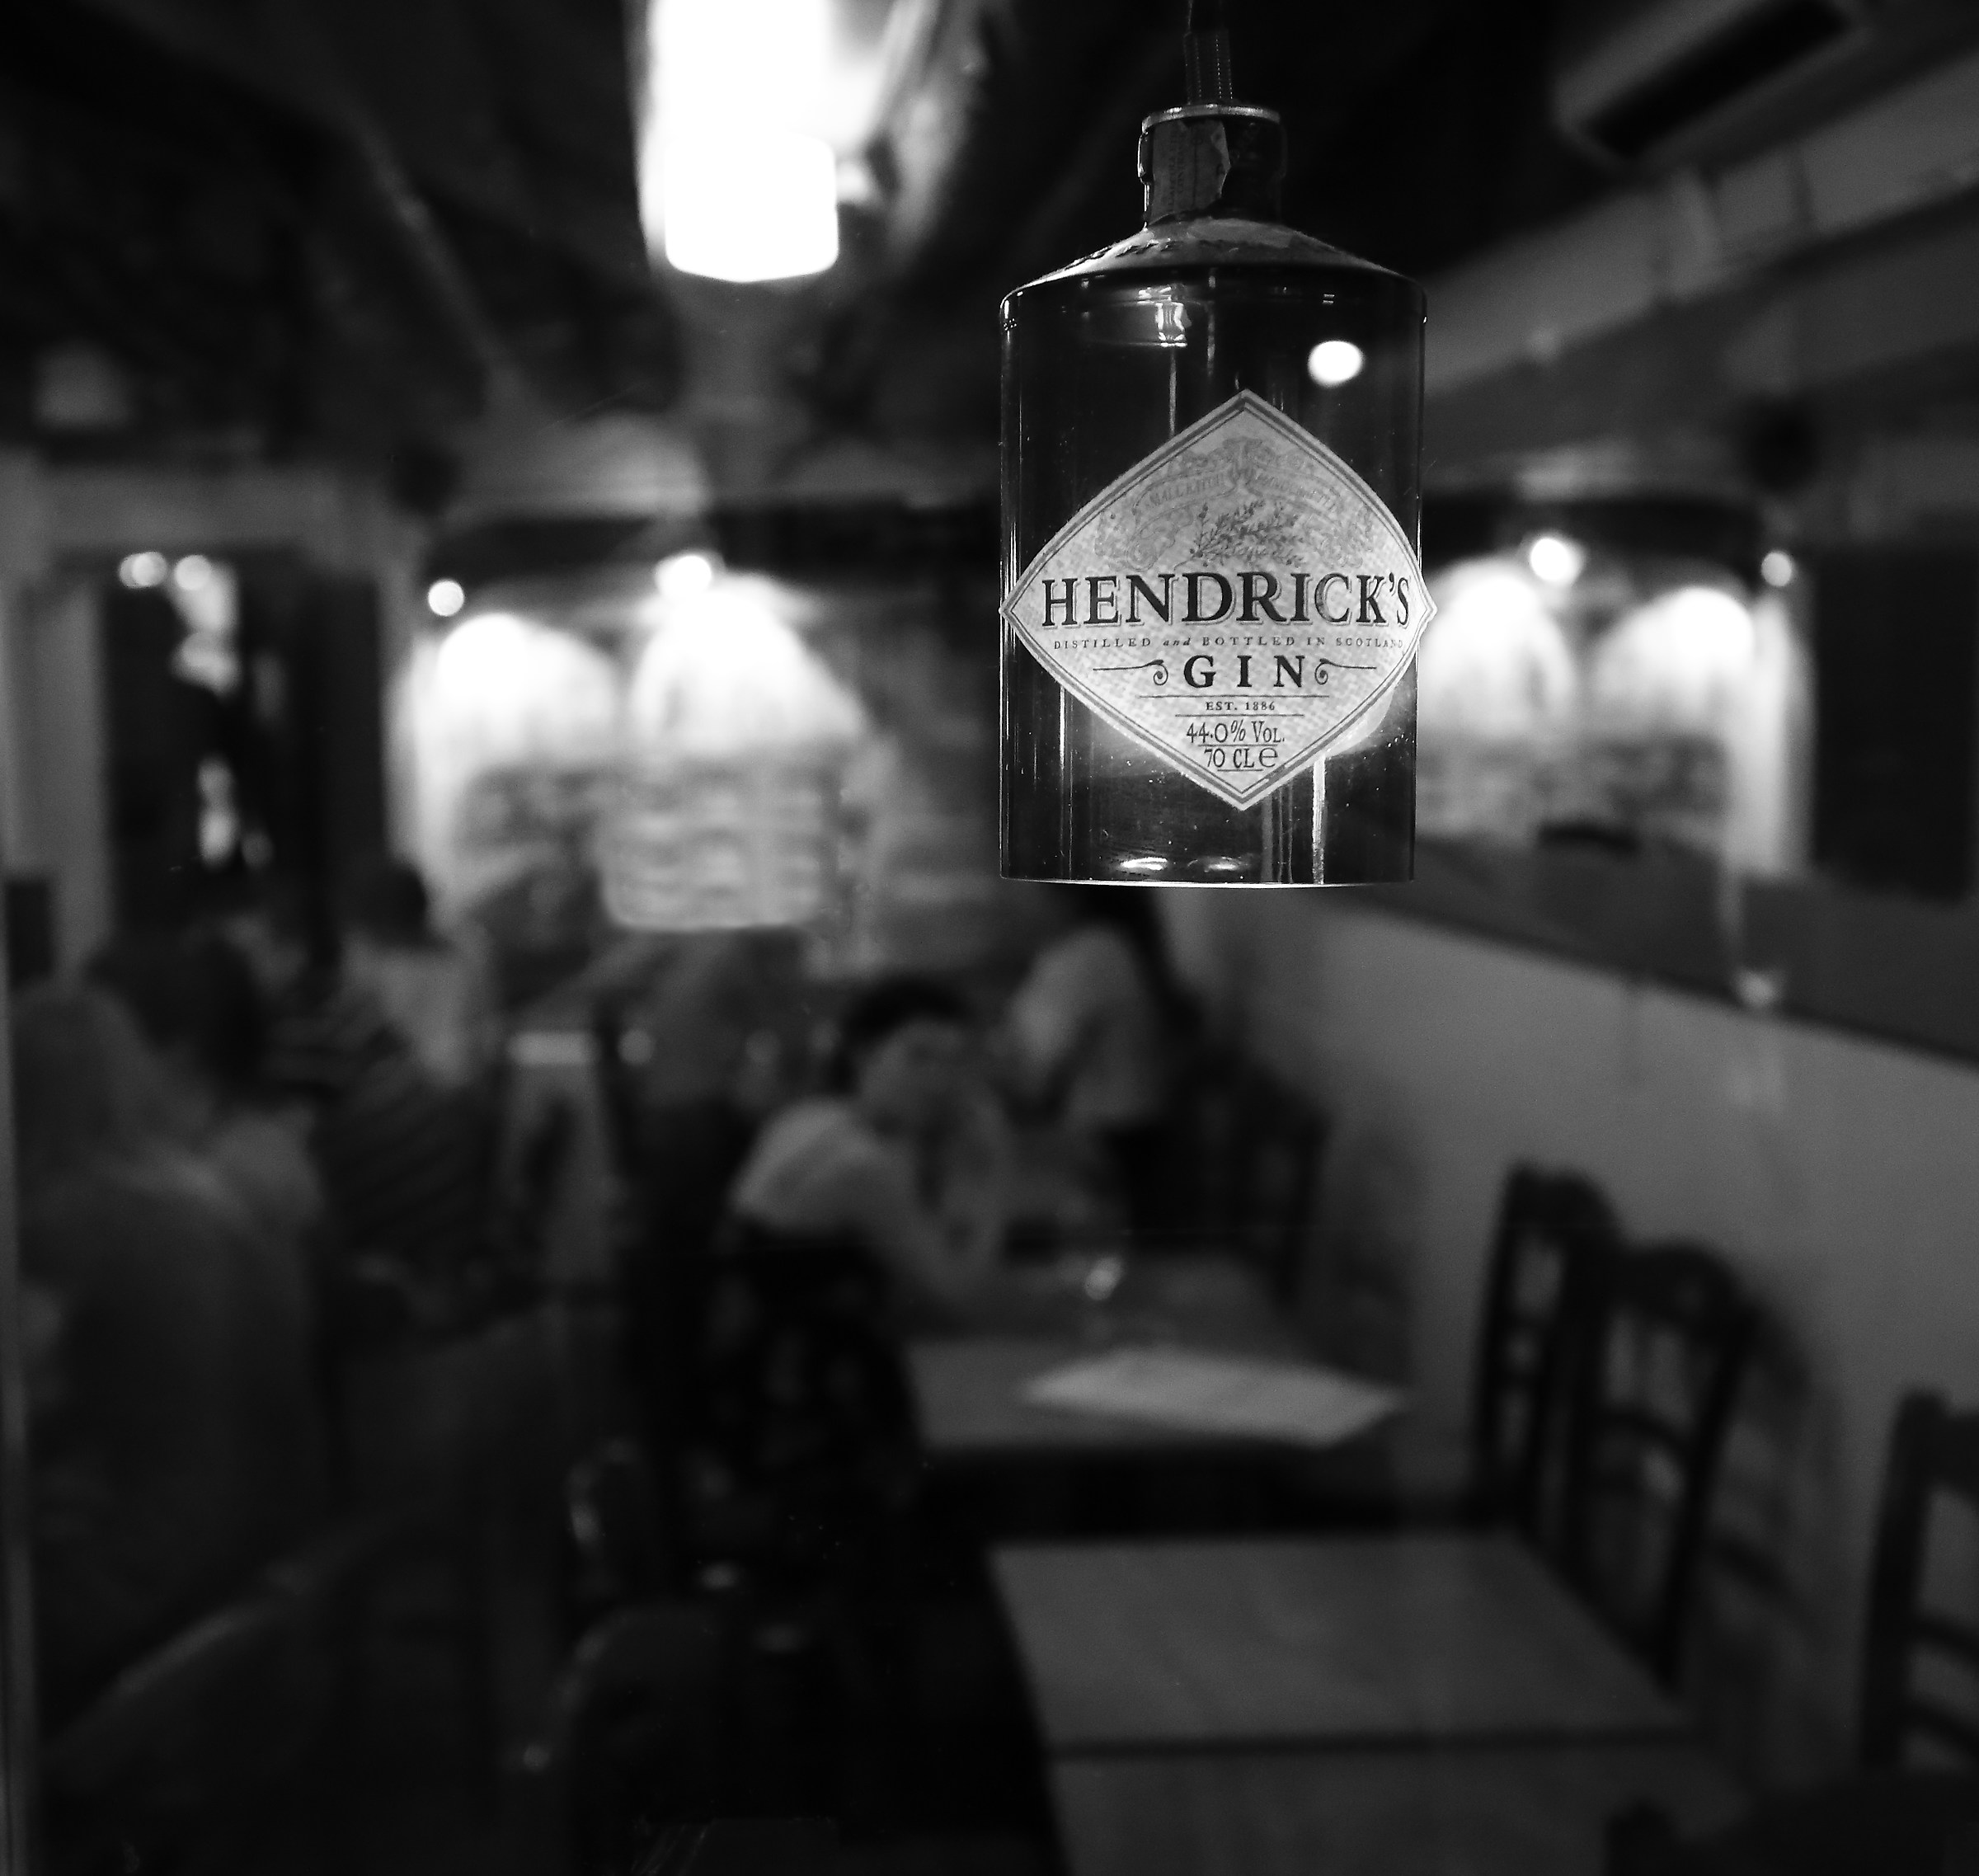 Hendrick's gin...